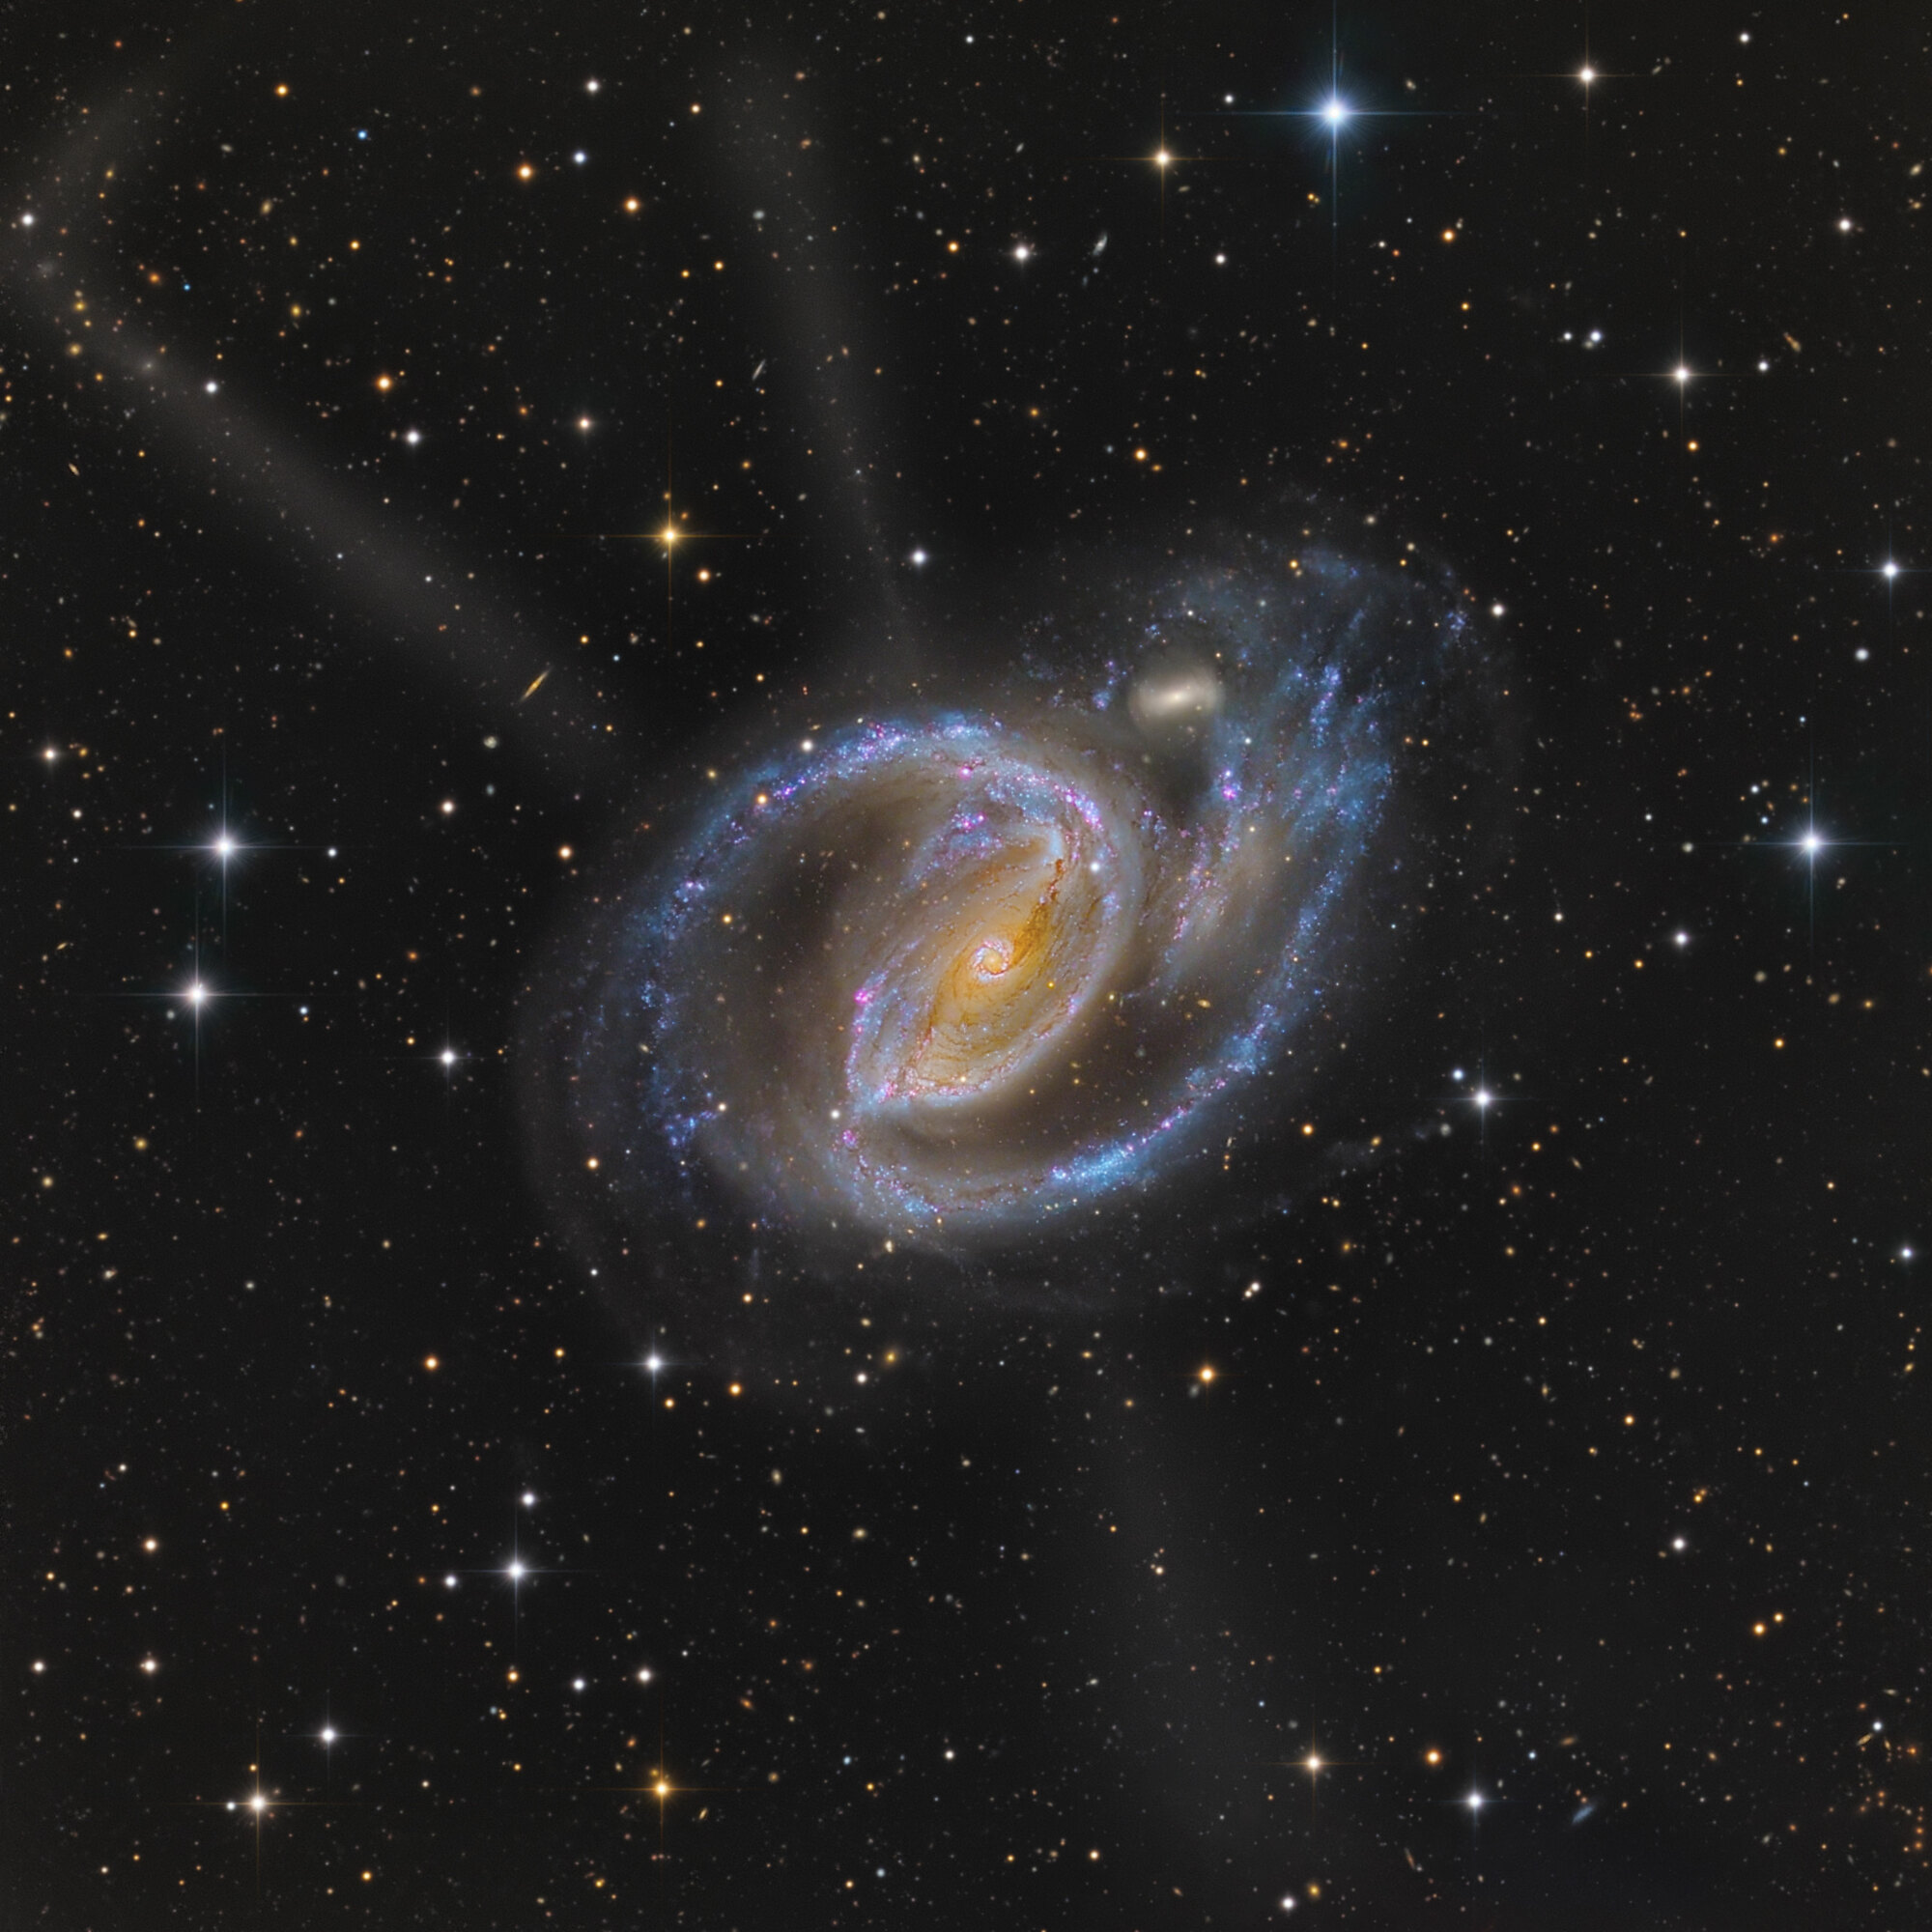 Une galaxie spirale vue dans l'espace.